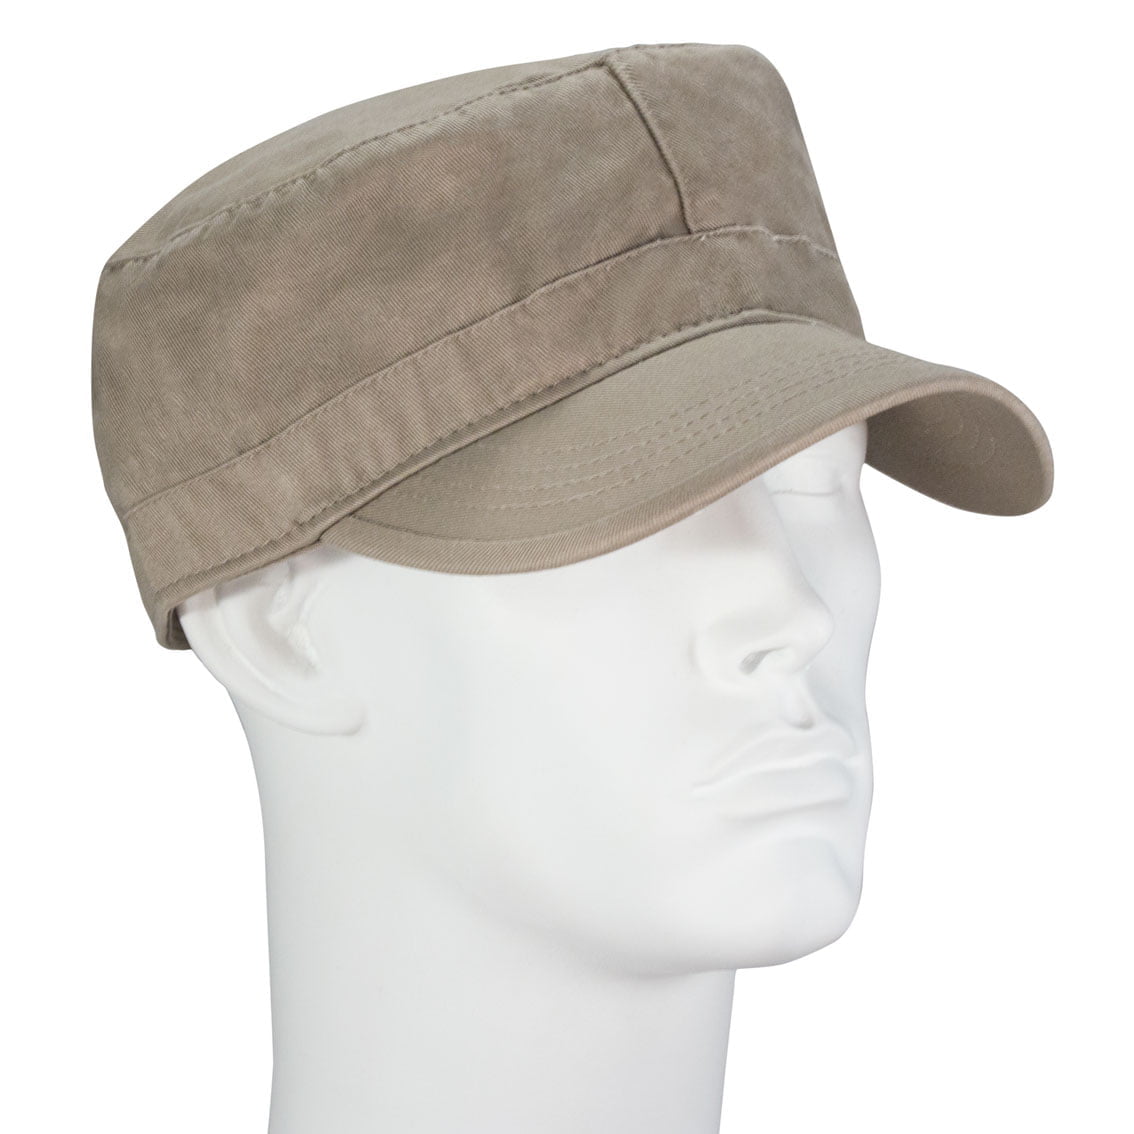 12pcs Khaki Plain Castro Military Fatigue Army Hats - Fitted - Unconstructed - 100% Cotton - Bulk by the Dozen - Wholesale